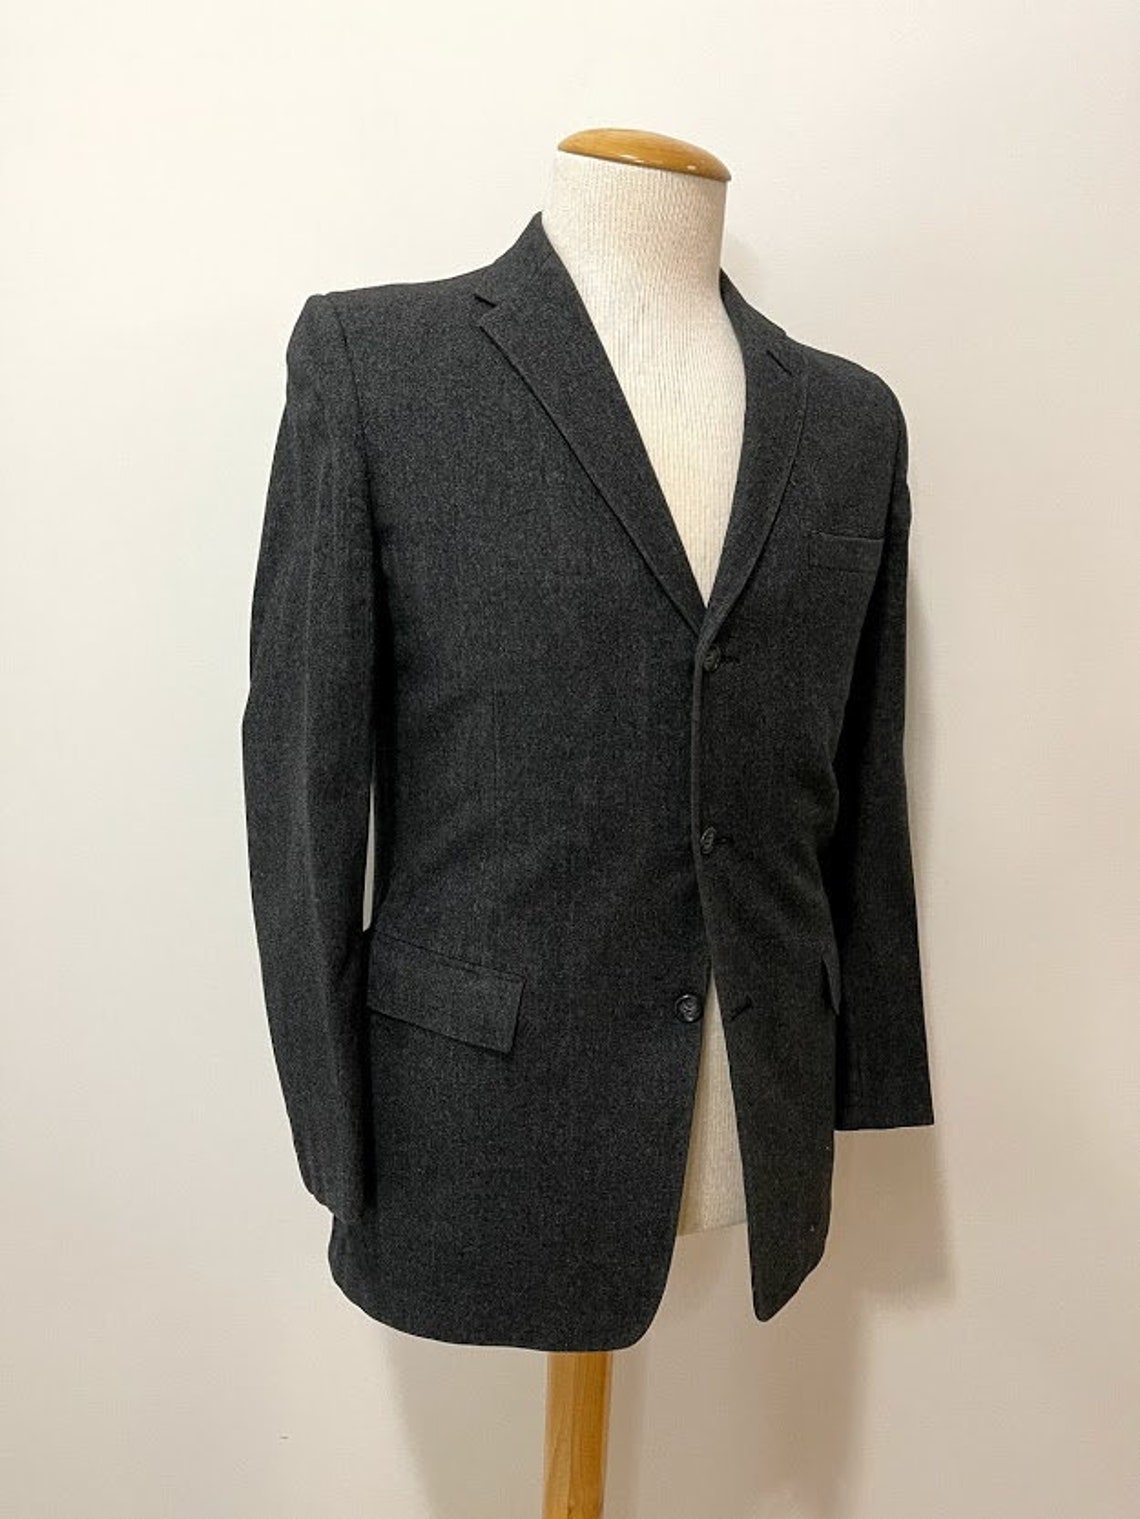 Vintage 1950's Men's Dark Grey Wool Flannel Suit | Etsy